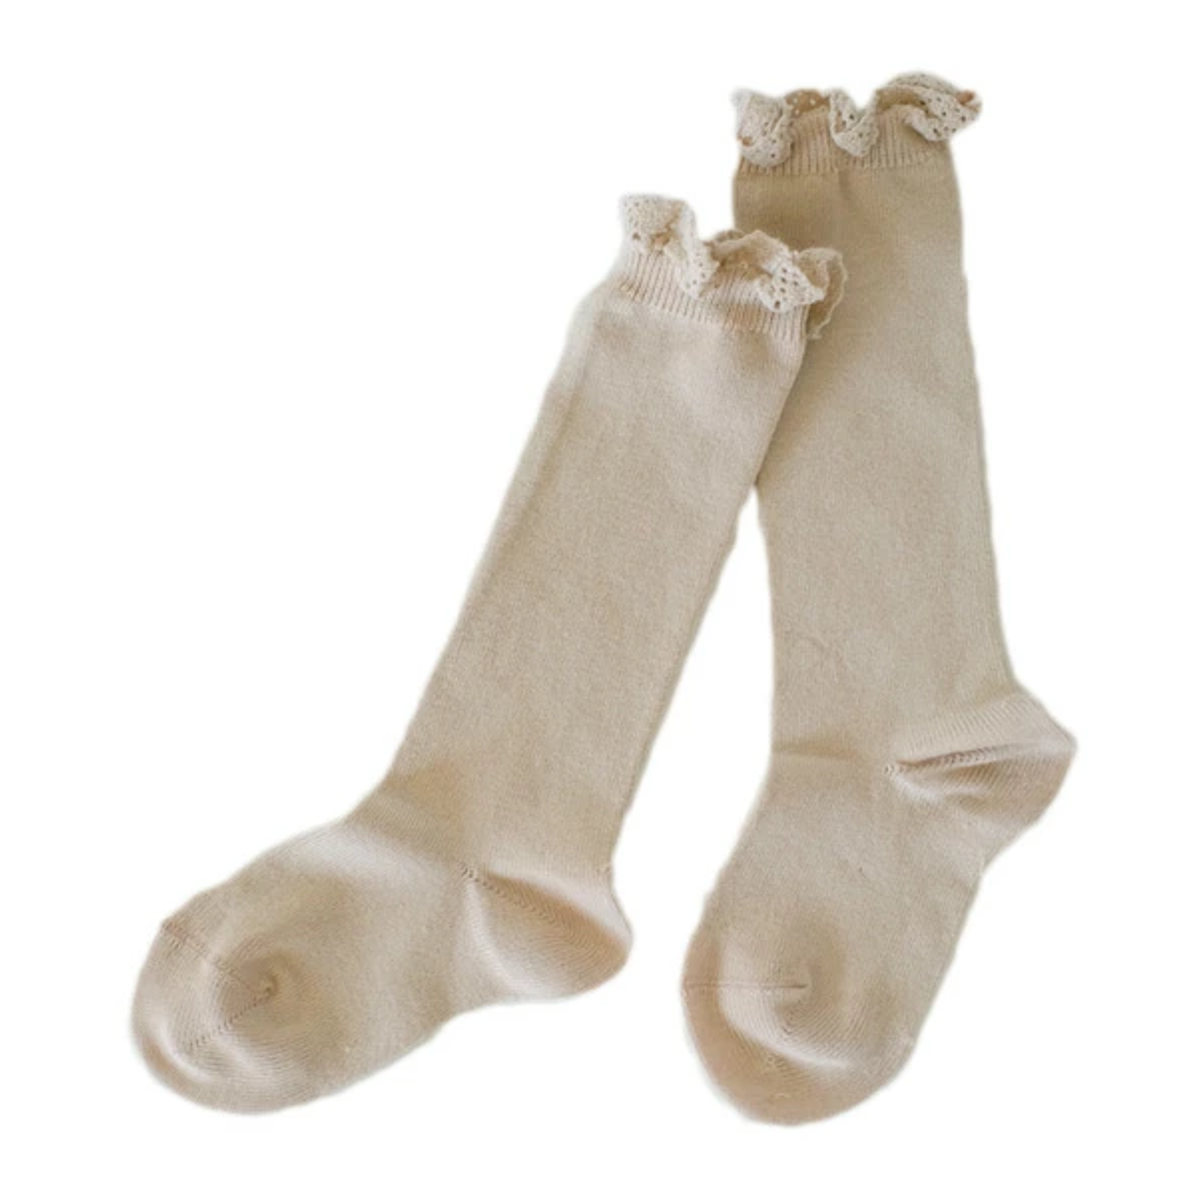 靴下 condor 子供用 3〜4歳 Knee socks with lace edging cuf...